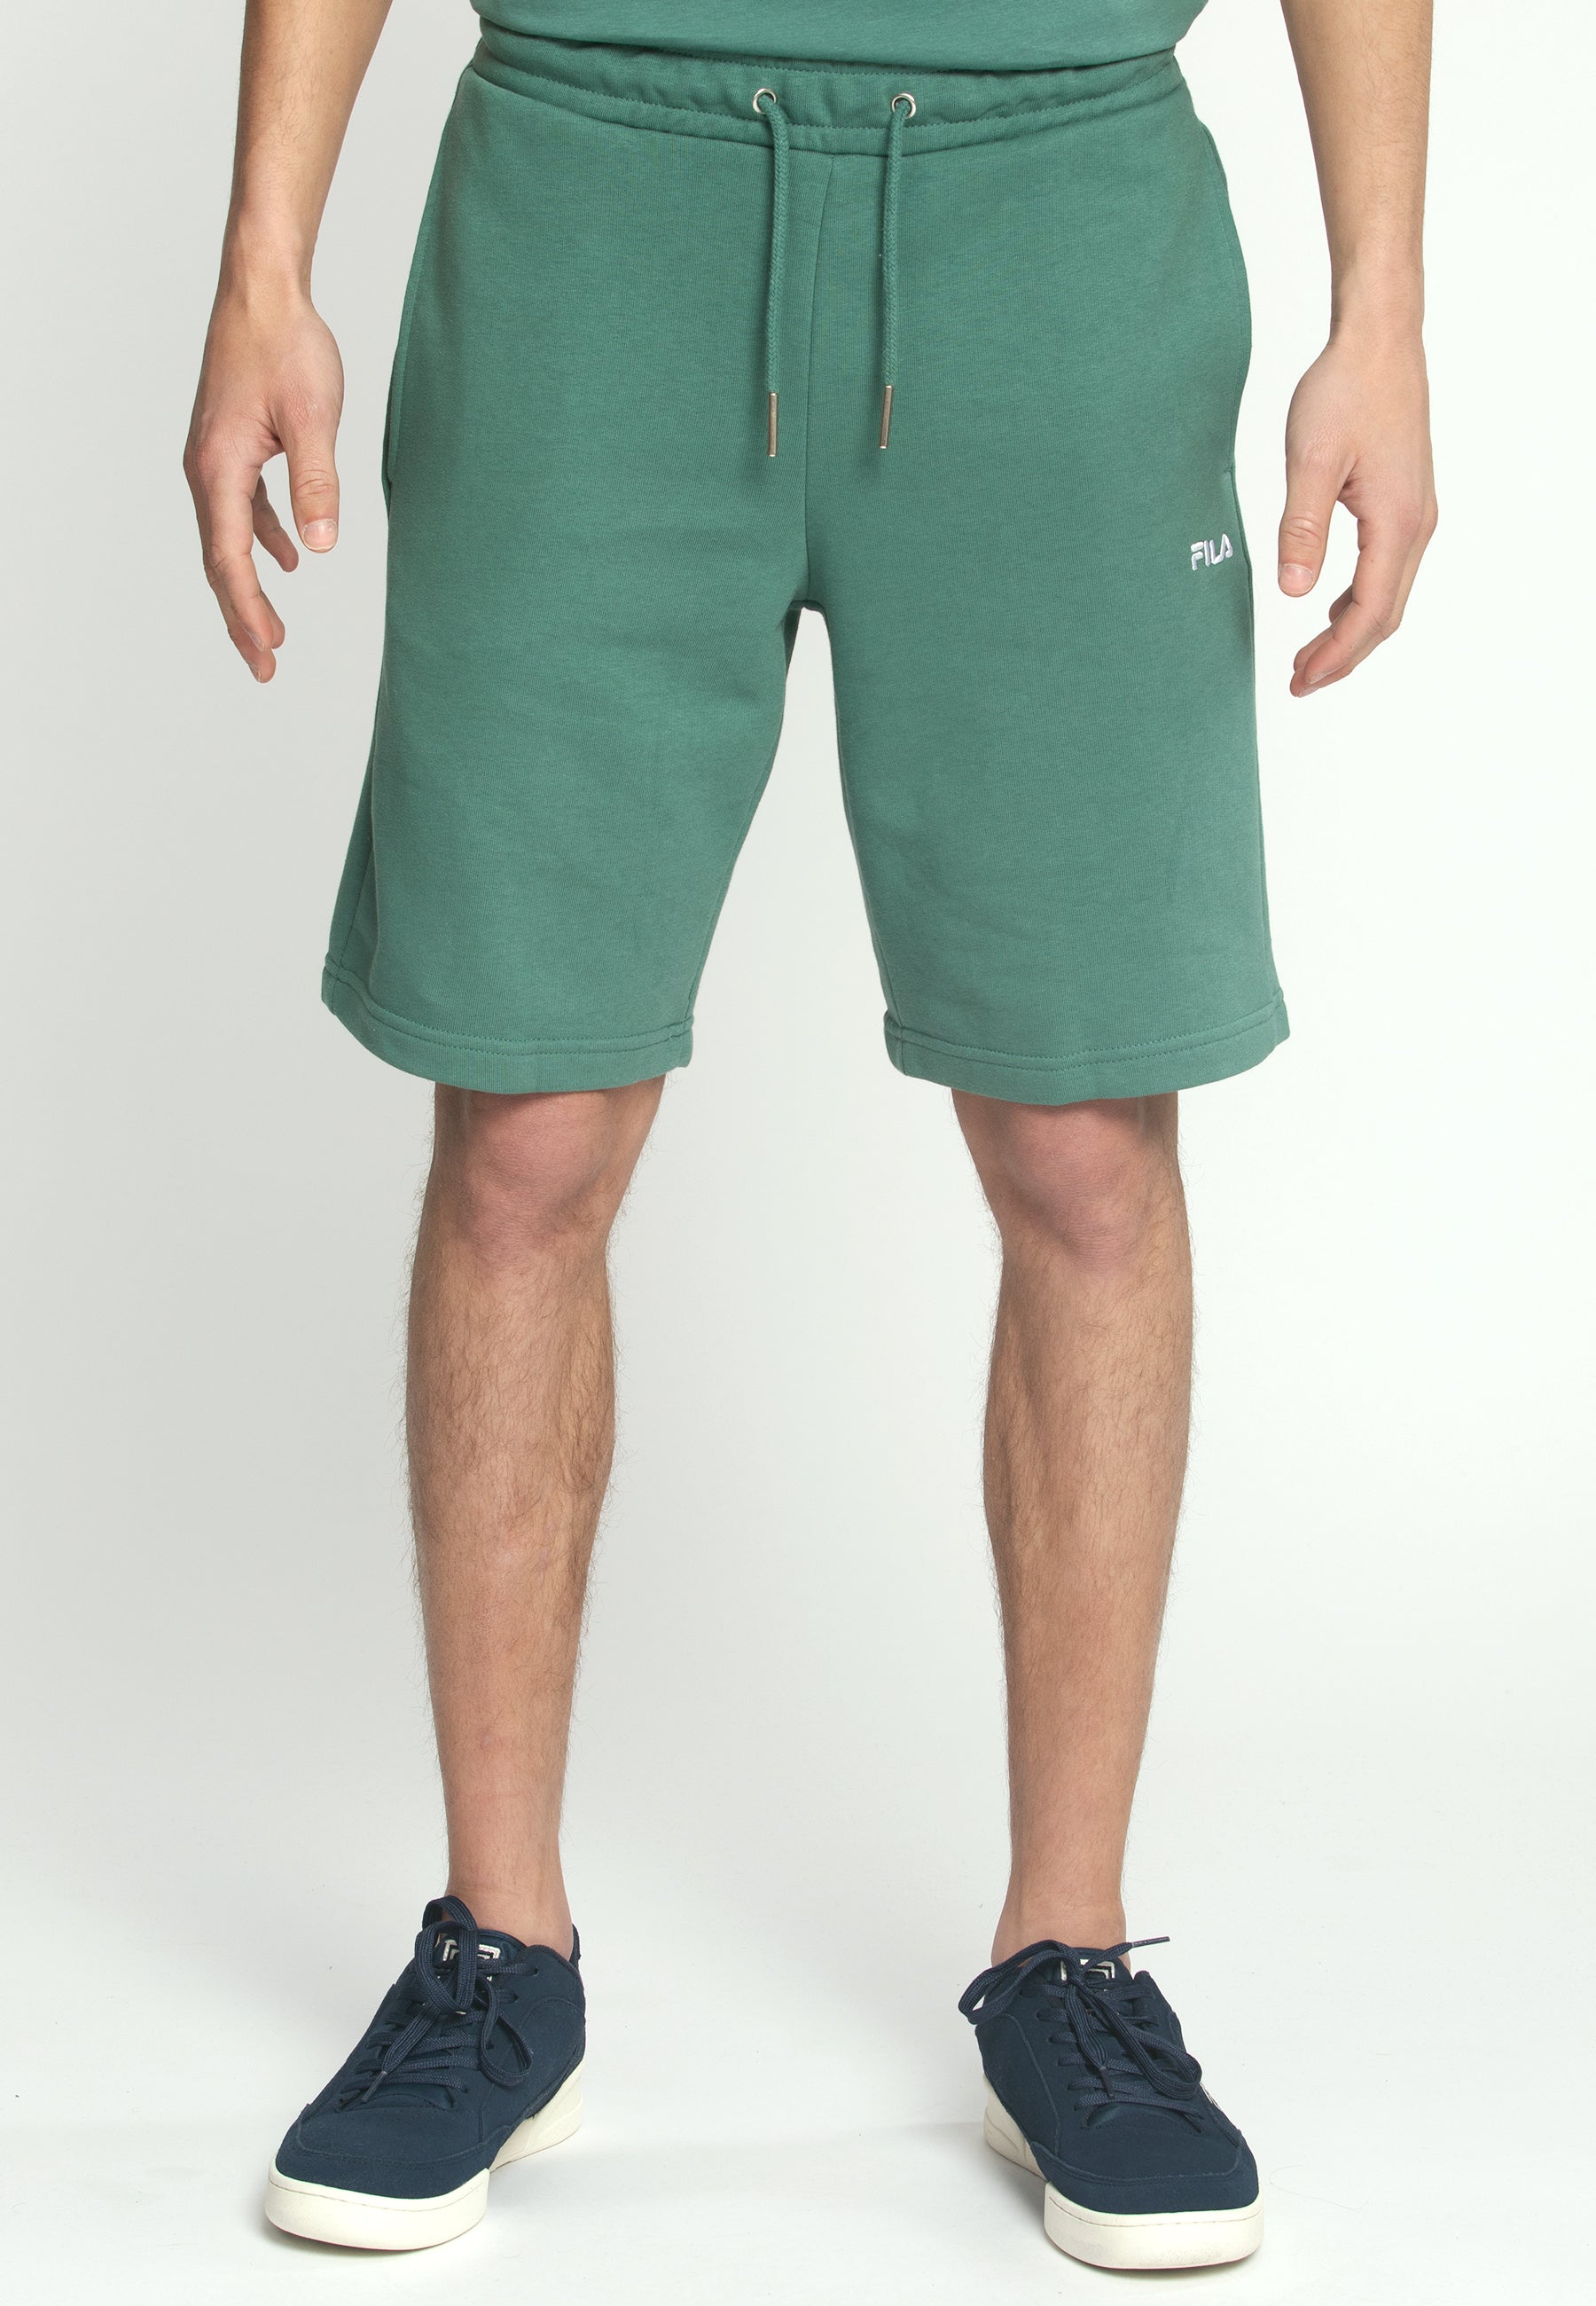 Blehen Sweat Shorts in Blue Spruce Sweatshorts Fila   